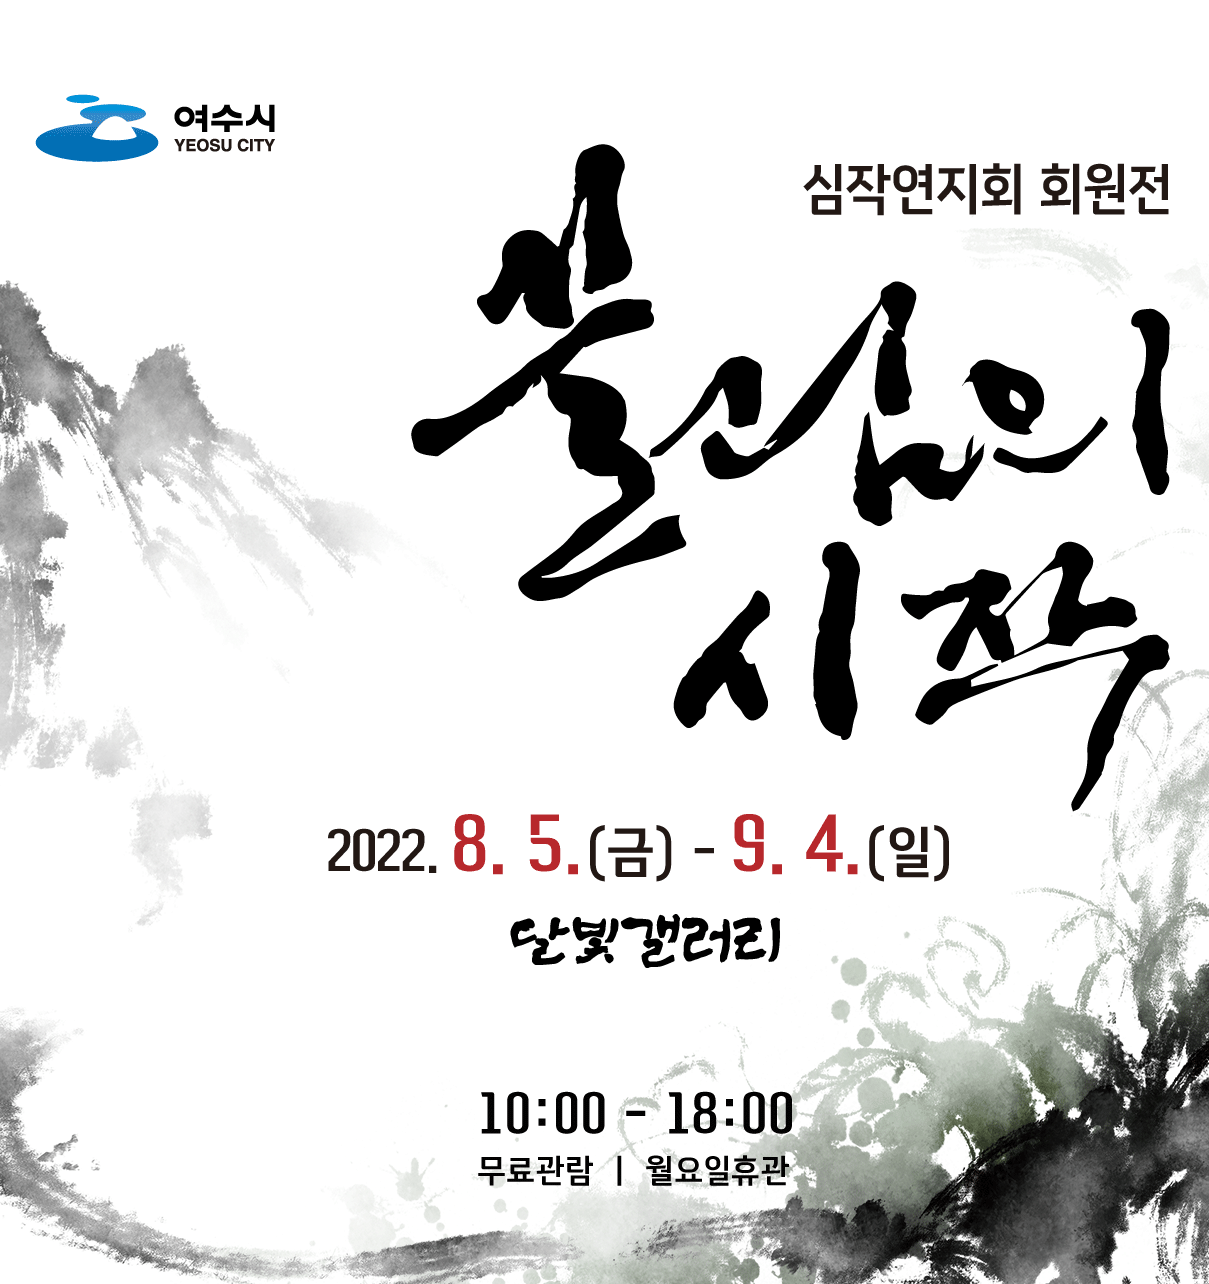 달빛갤러리 초대전 《끌림의 시작 : 심작연지회 회원전》